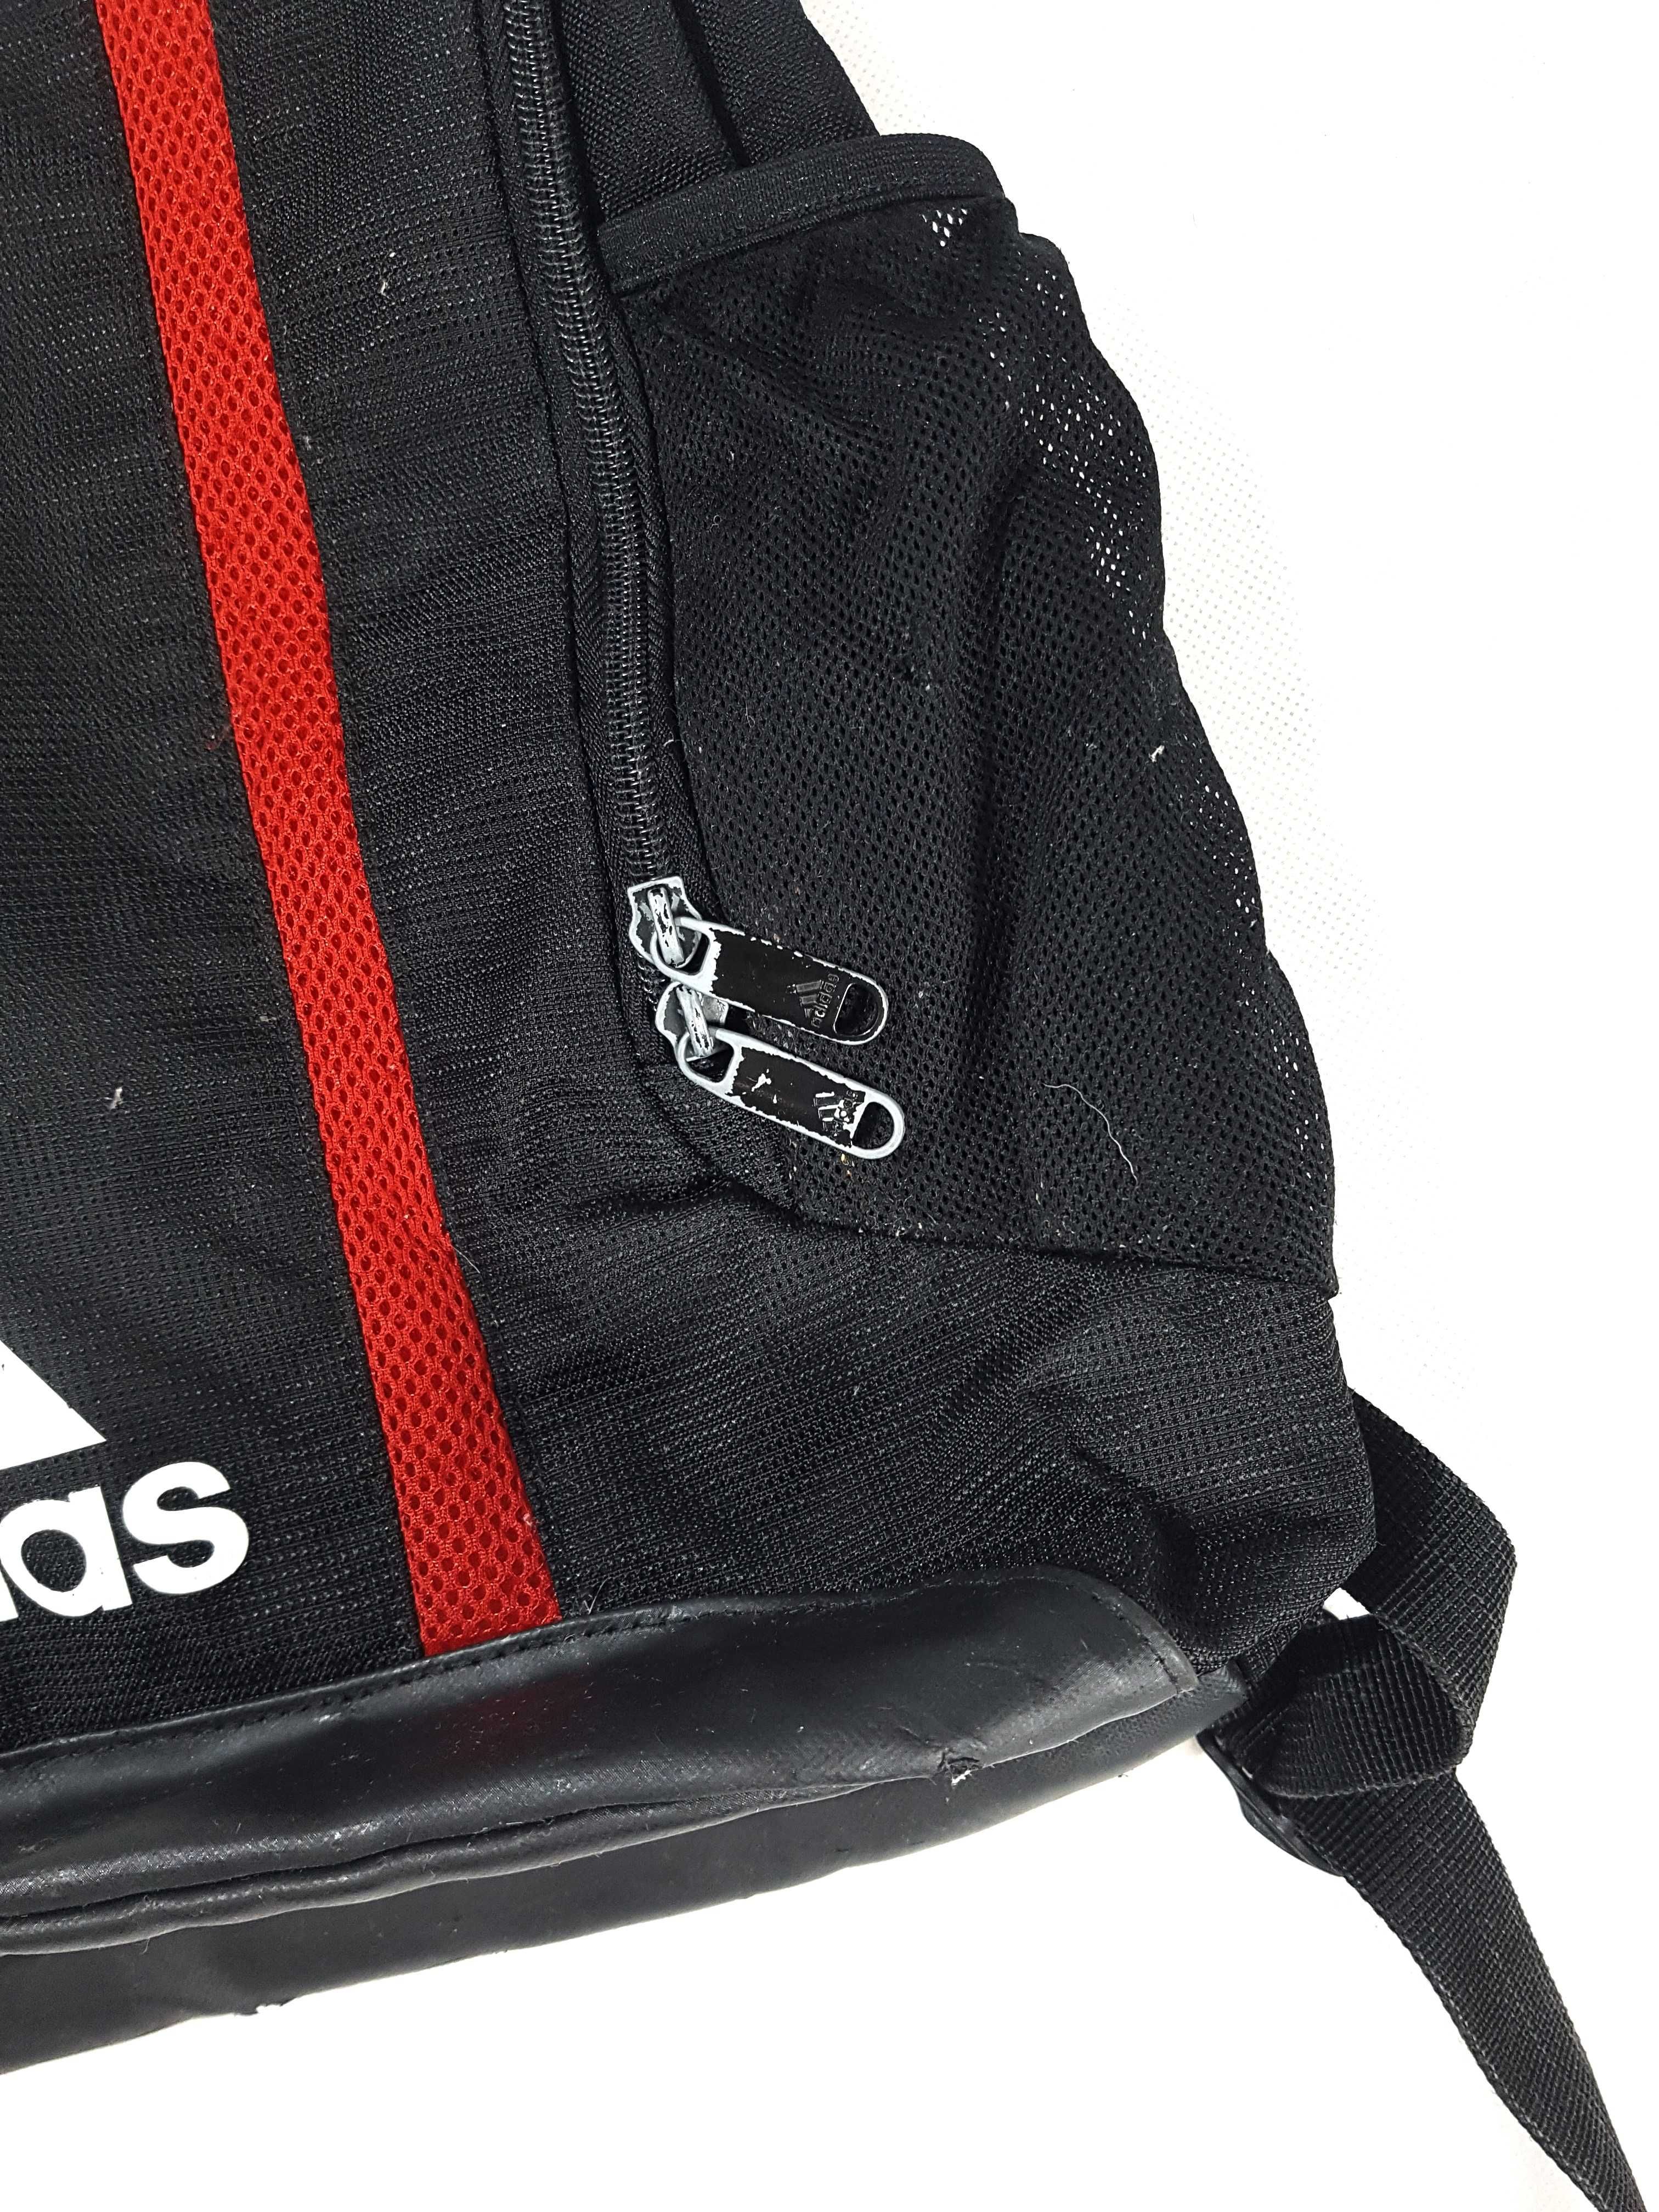 czarny plecak adidas unisex